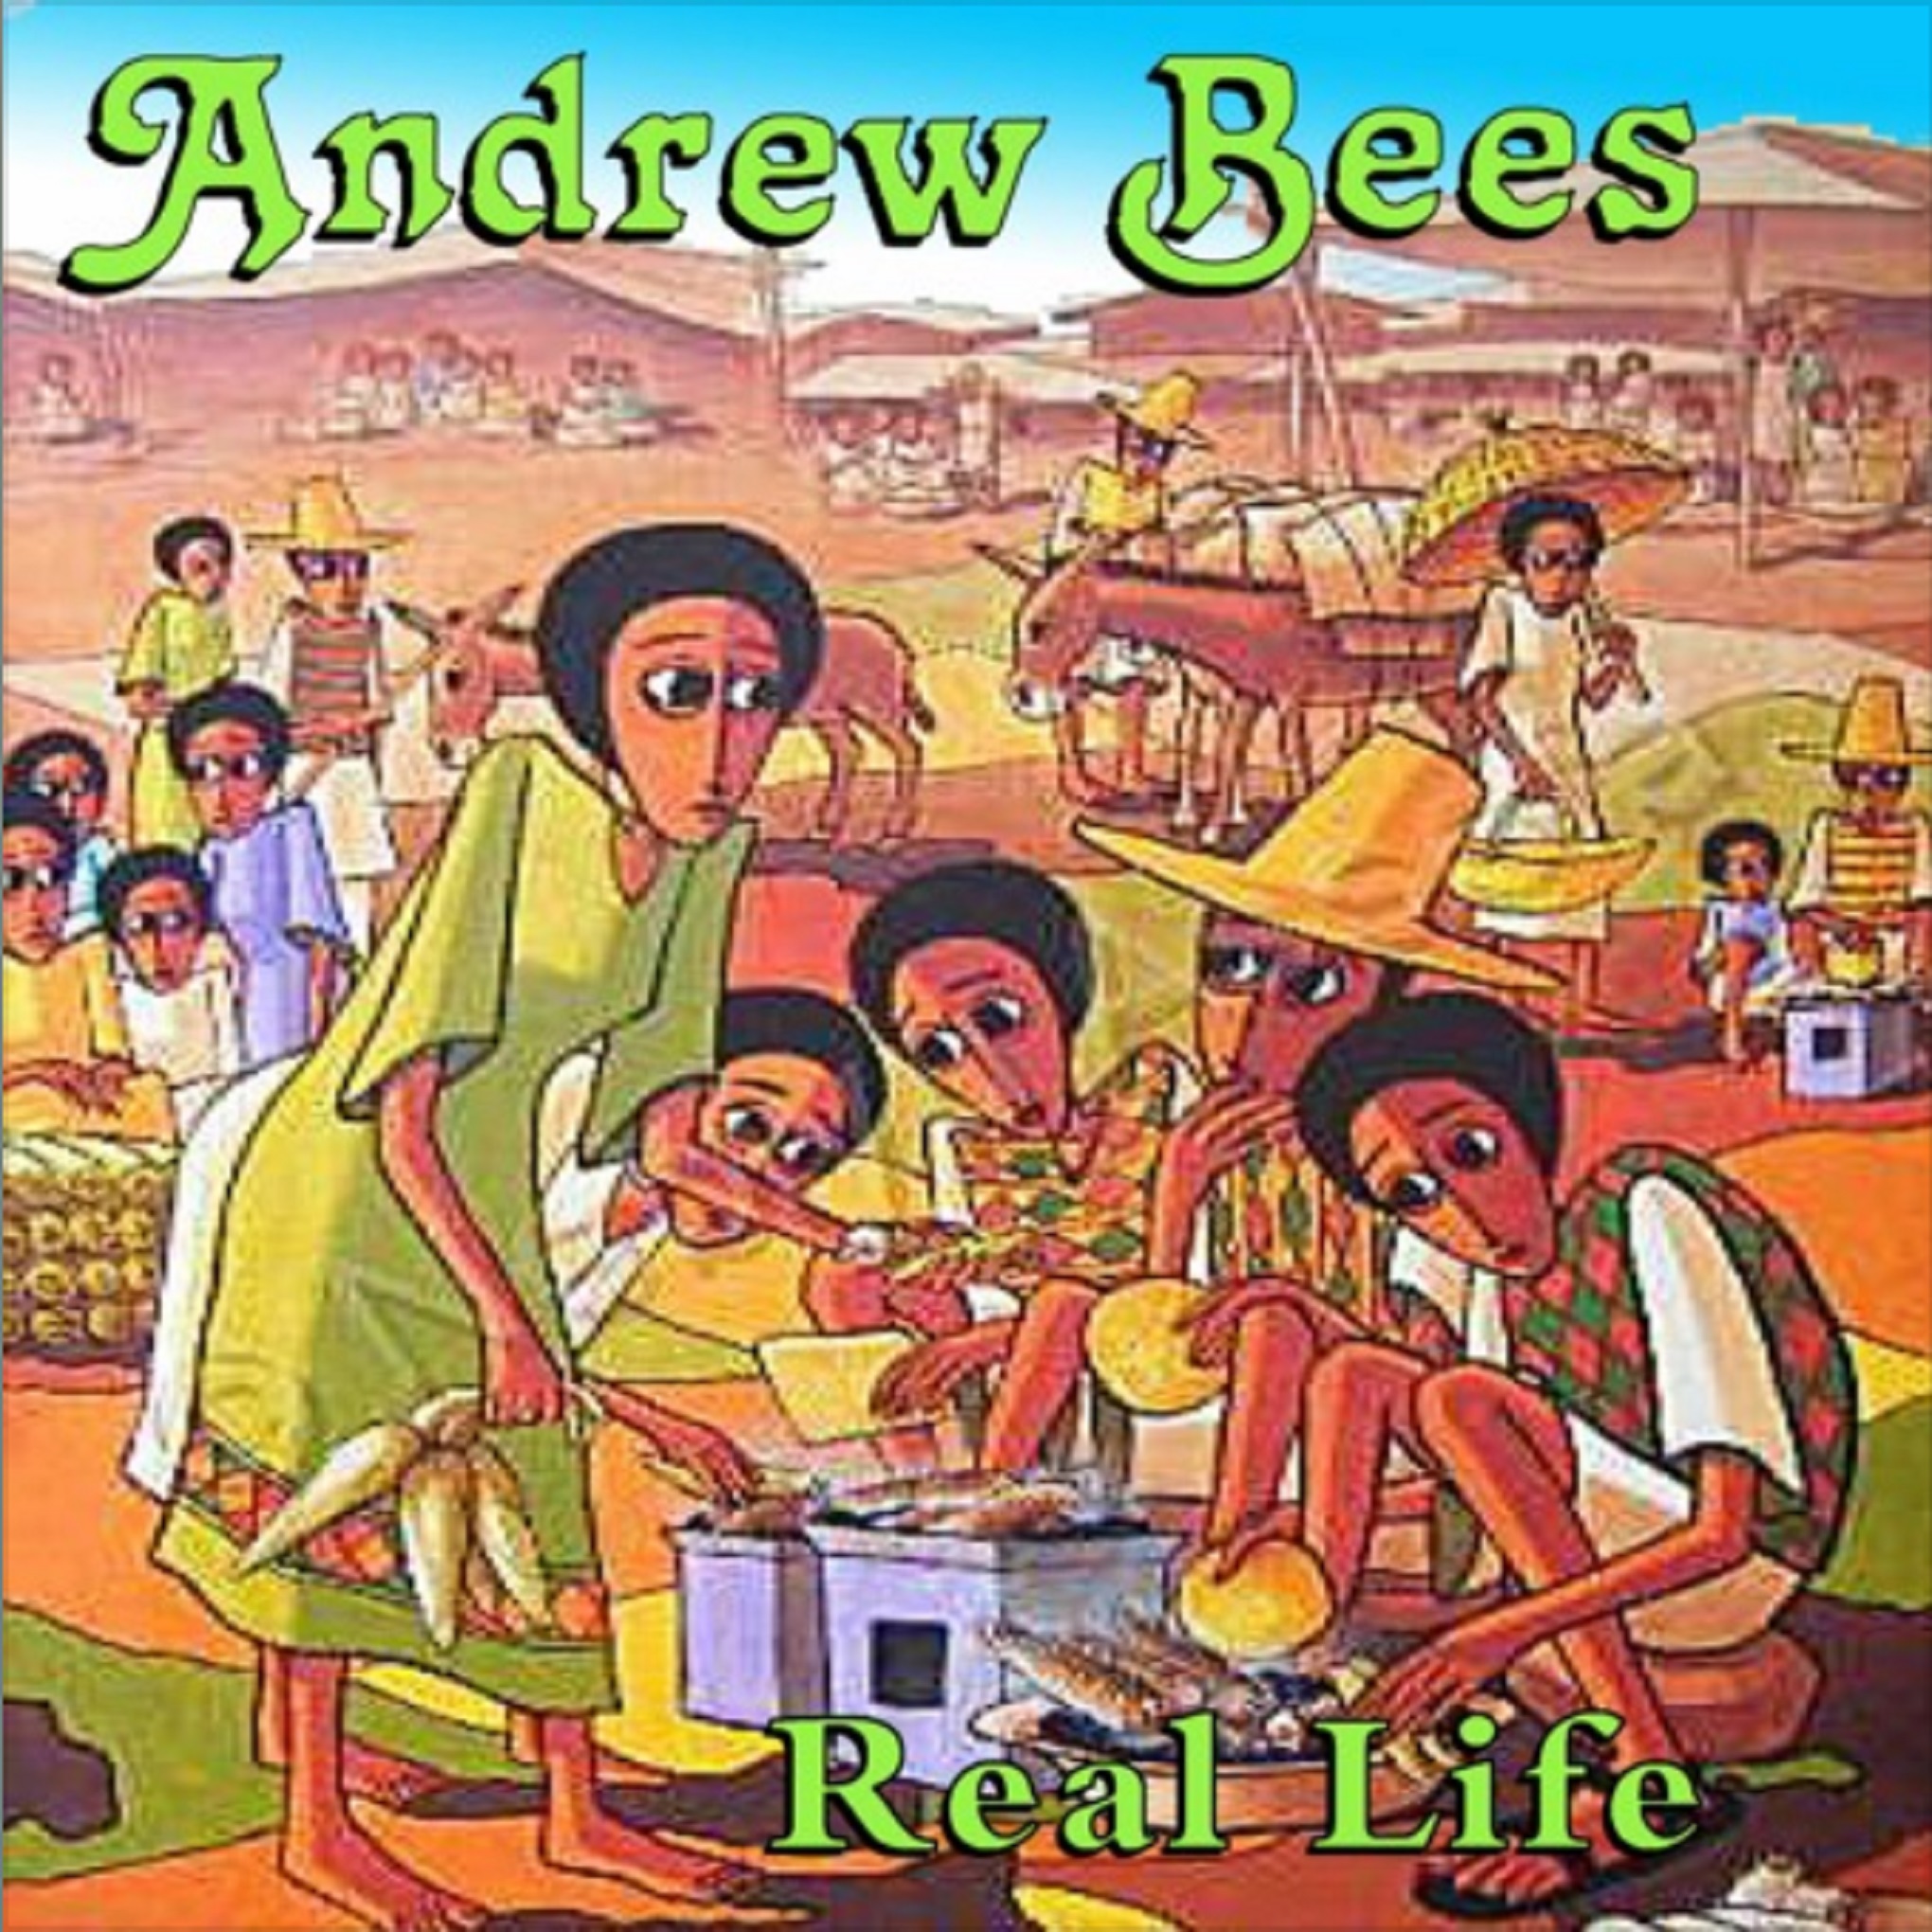 Legendary reggae artist Andrew Bees releases new single "Real Life"